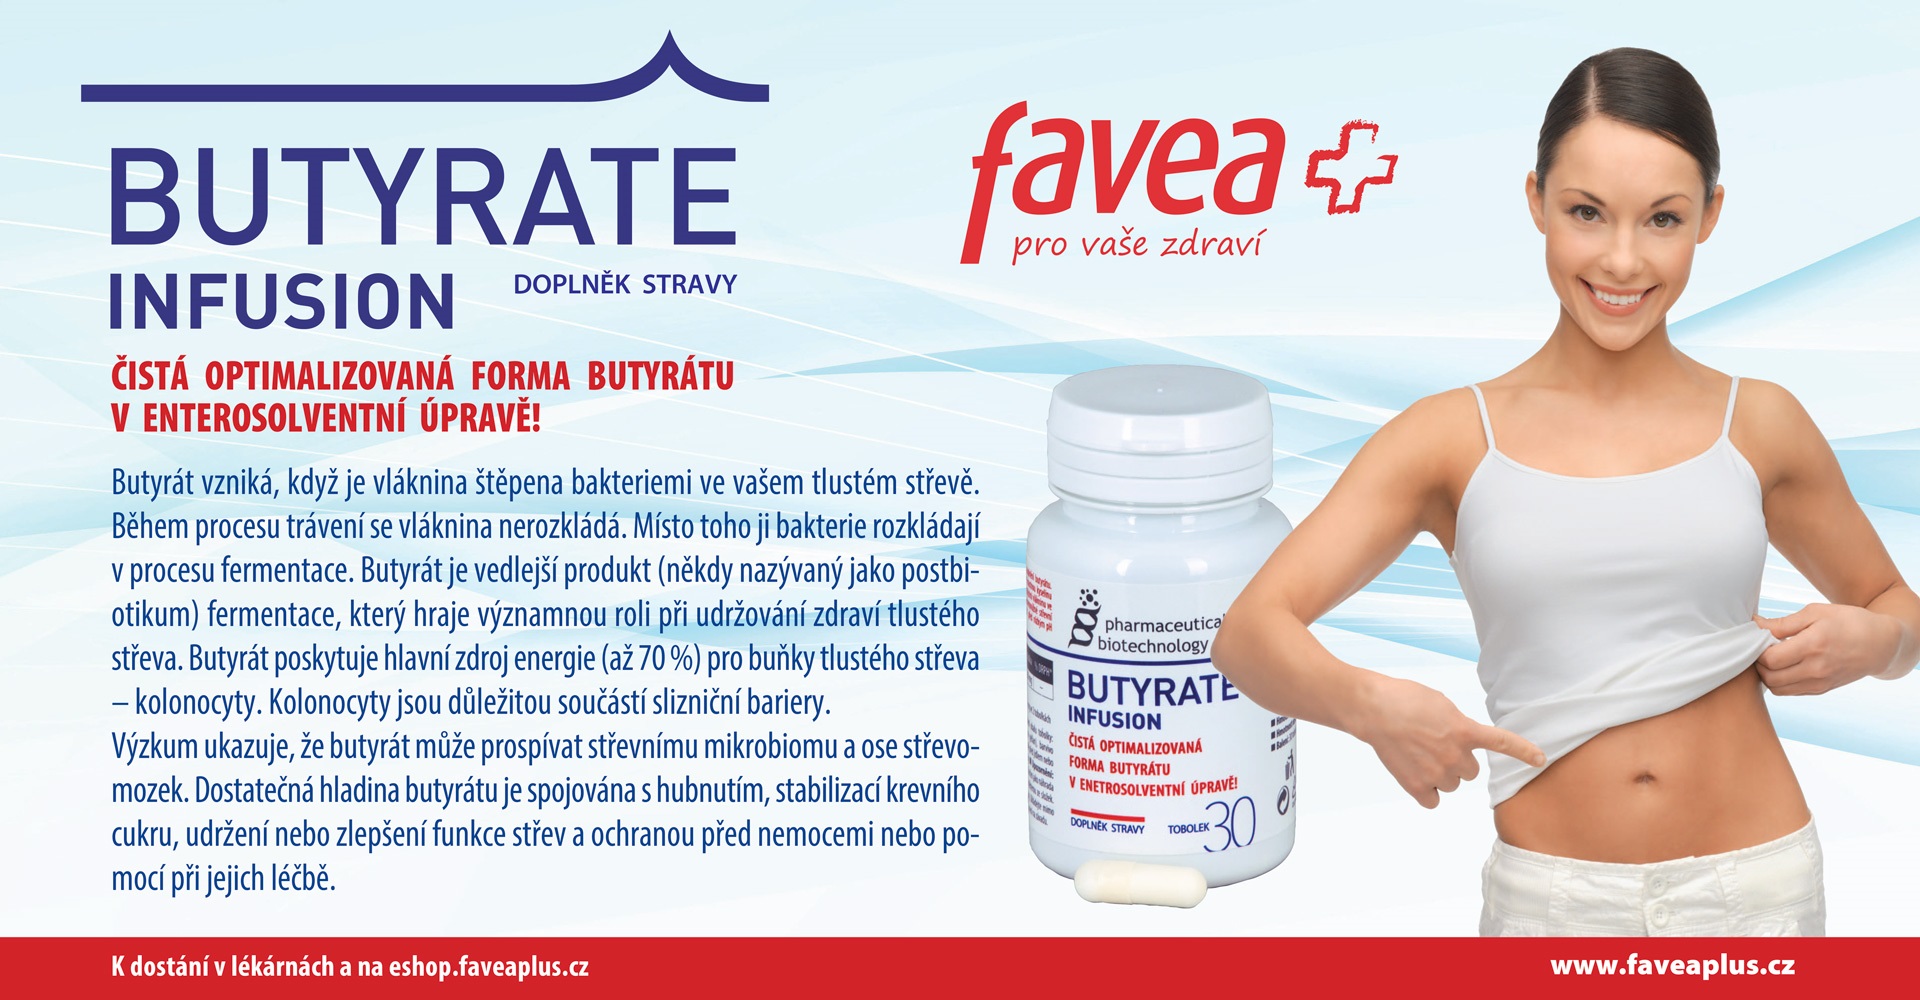 Favea: BUTYRATE infusion, Doplněk stravy